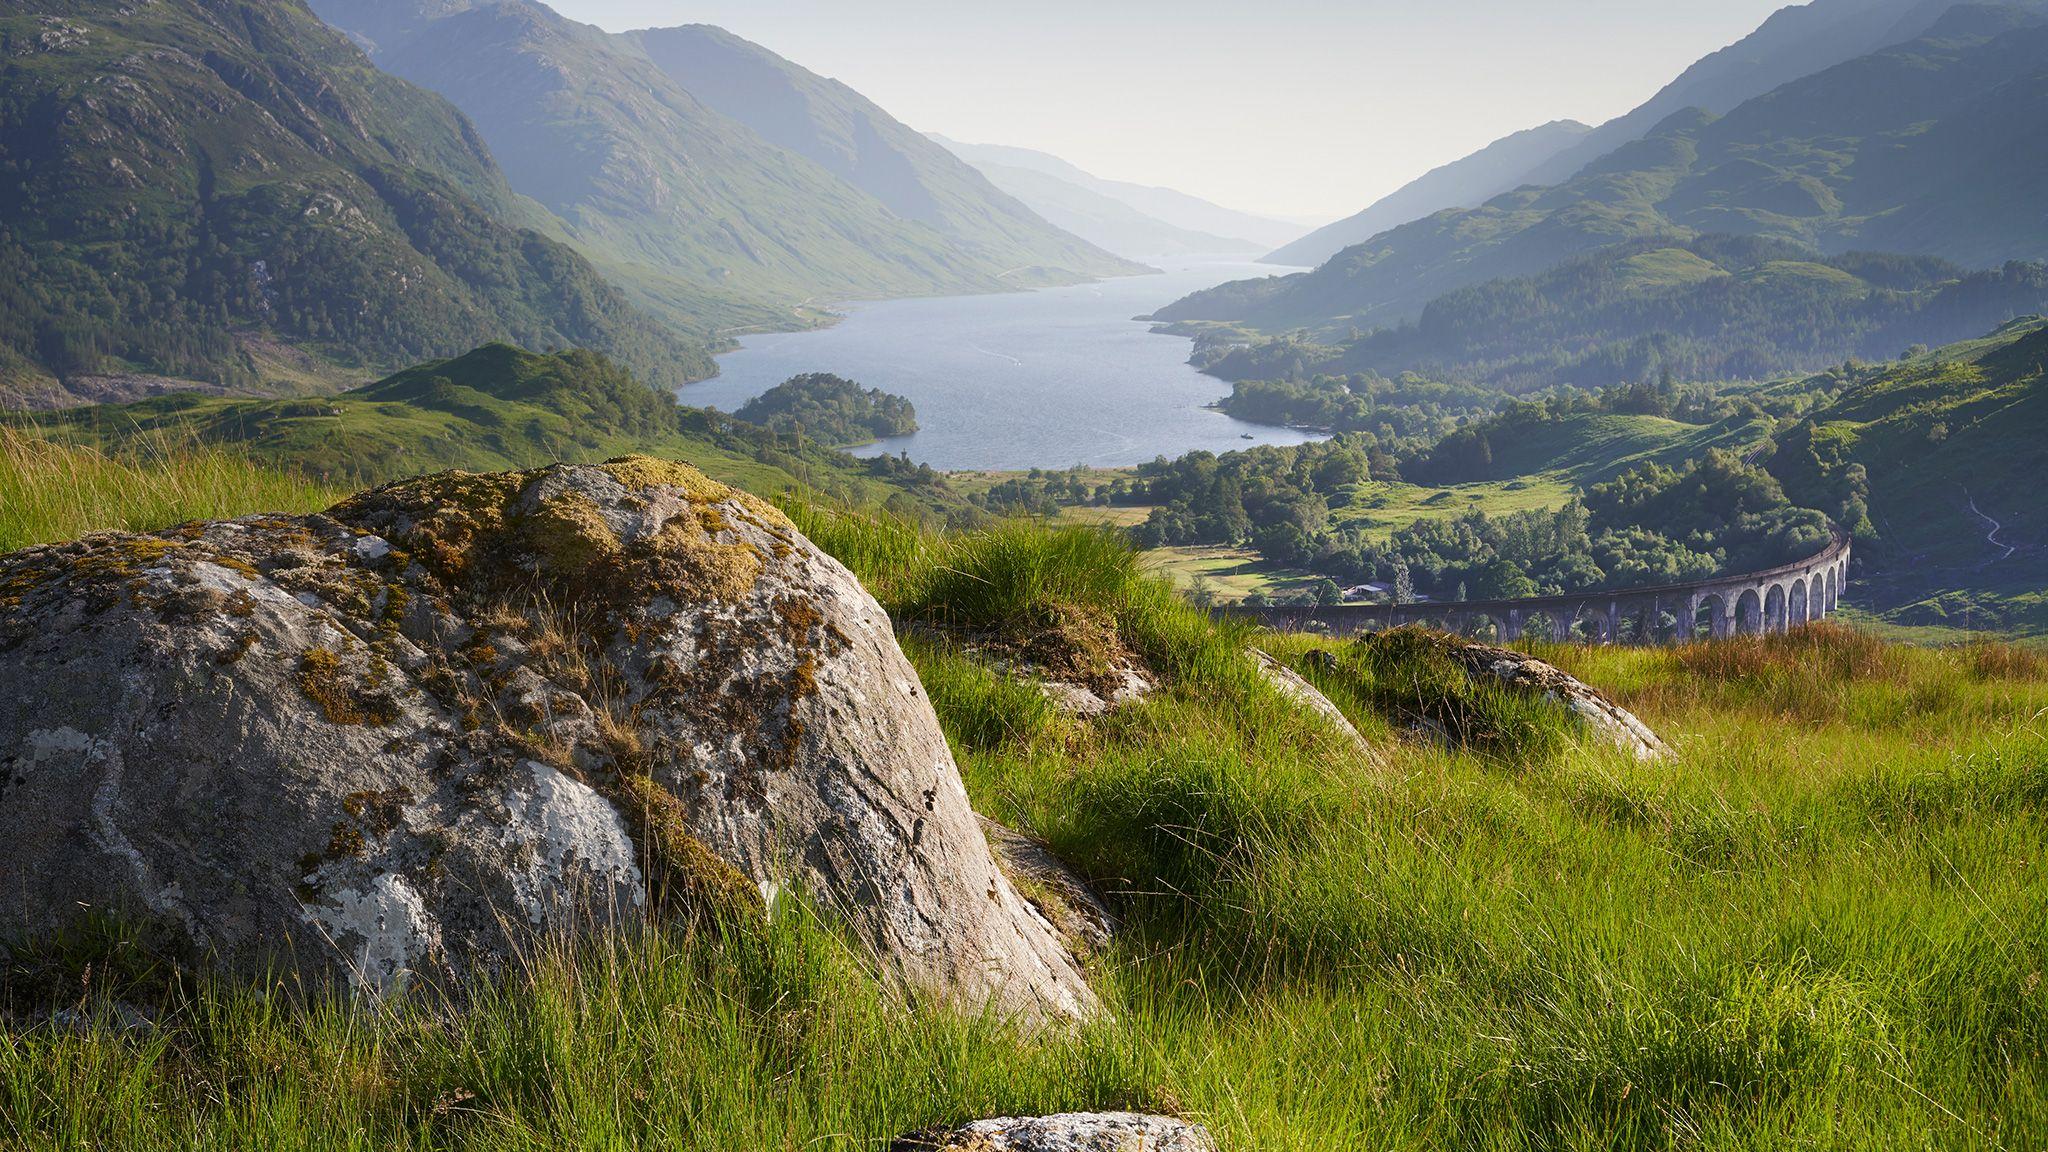 Scottish Highlands Wallpapers Top Free Scottish Highlands Backgrounds